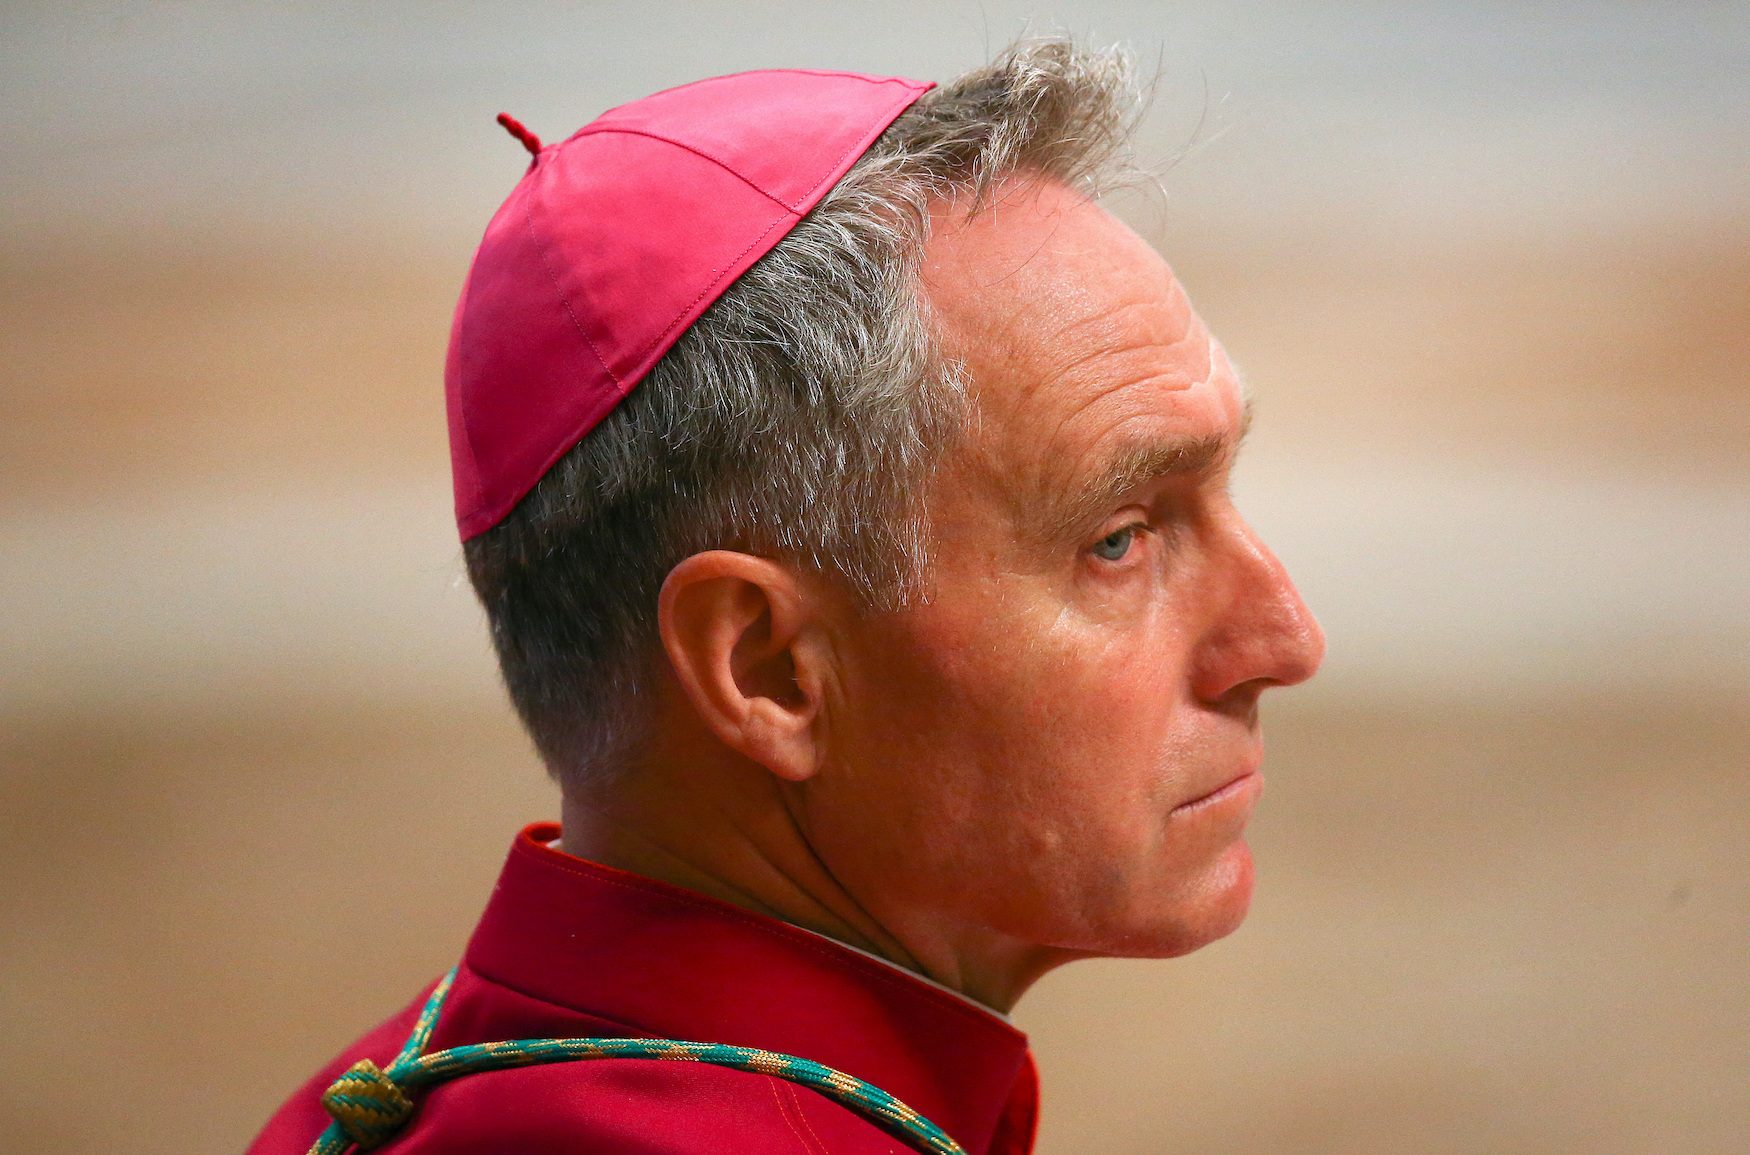 Book by Benedict’s top aide reveals tensions in Vatican